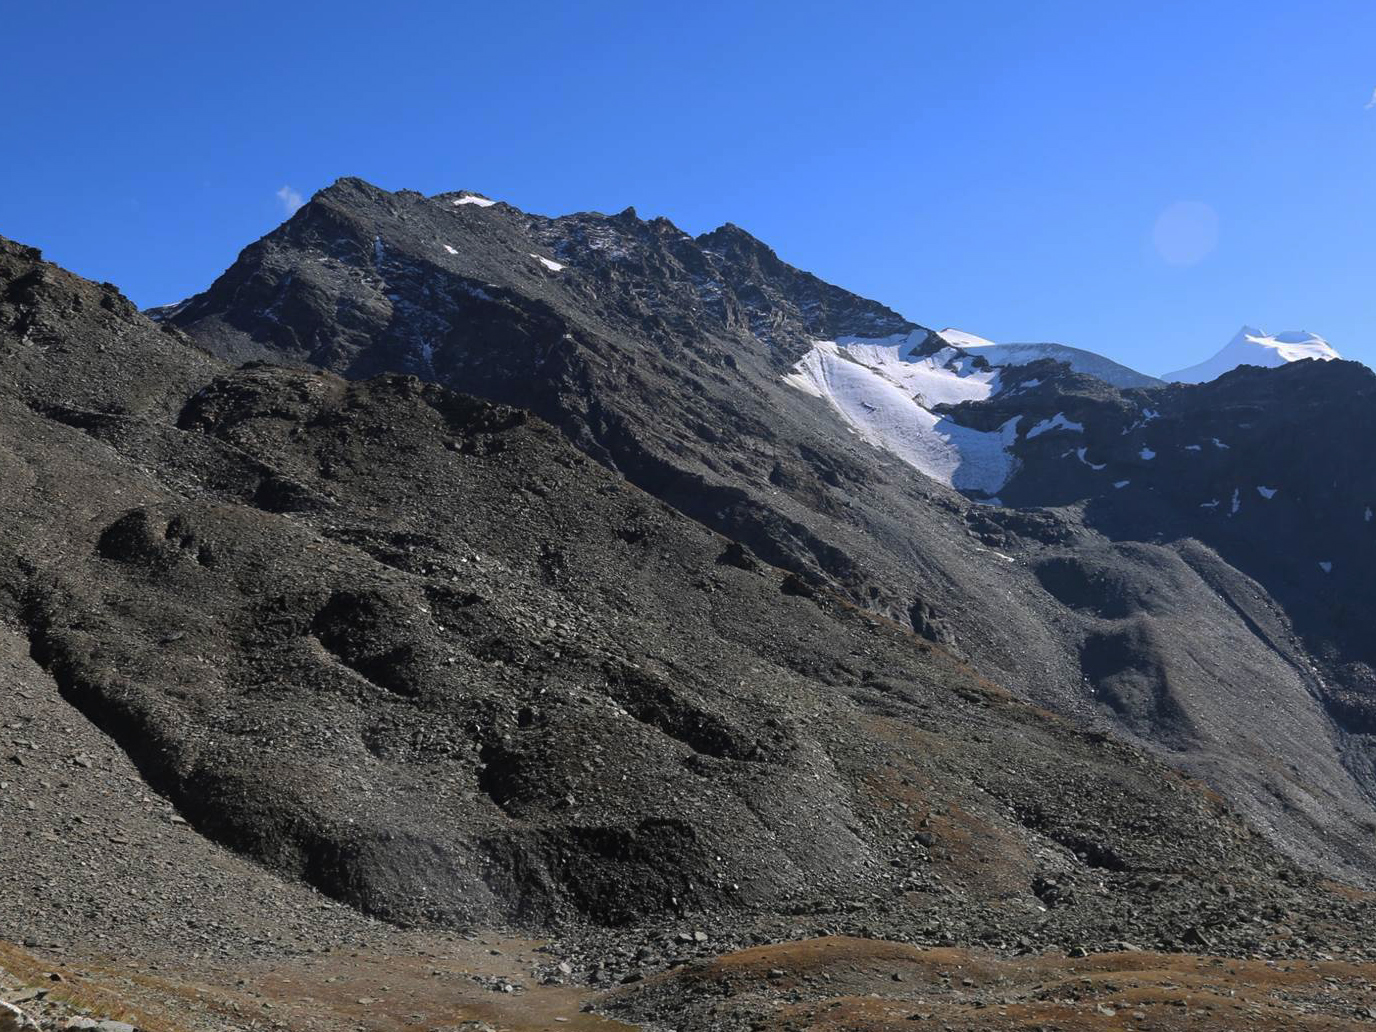 Vergrösserte Ansicht: Der Blockgletscher (linke Bildhälfte) am Fusse des Furggwanghorns (3161 m, nicht im Bild) im Wallis verändert seine Oberfläche rasant und kriecht immer rascher talwärts.